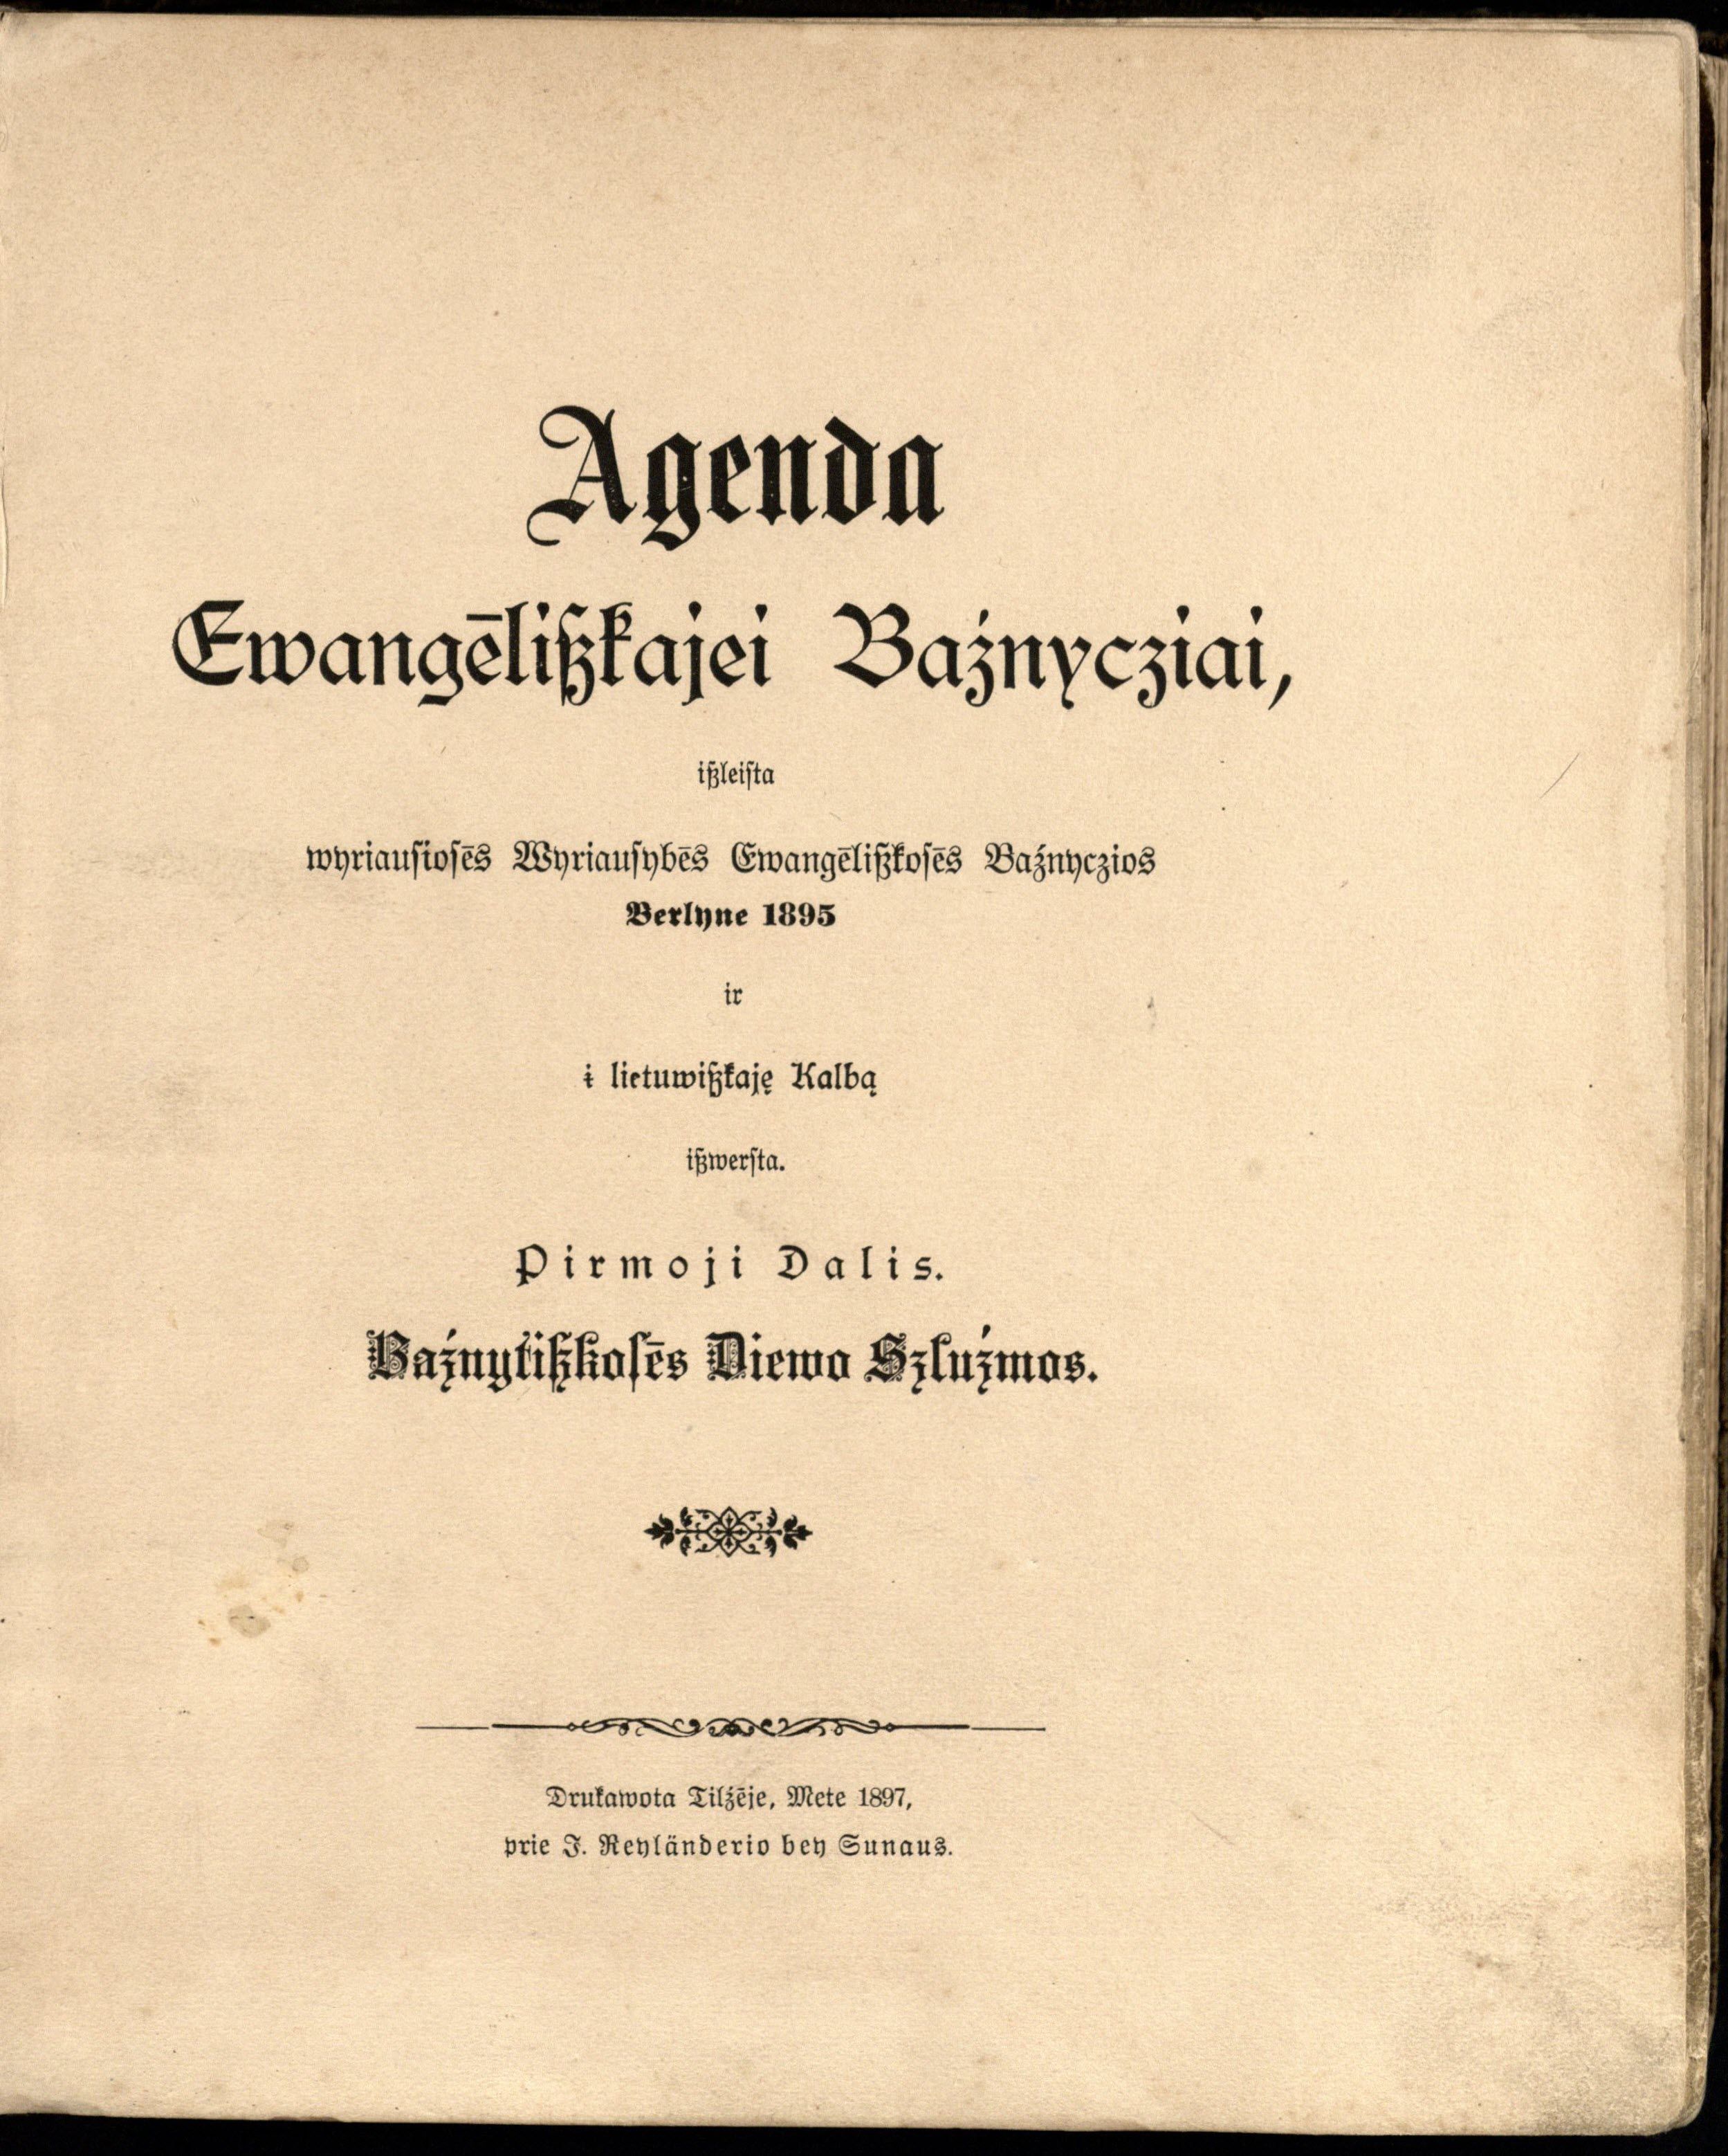 Agenda evangeliškajai bažnyčiai (1897)